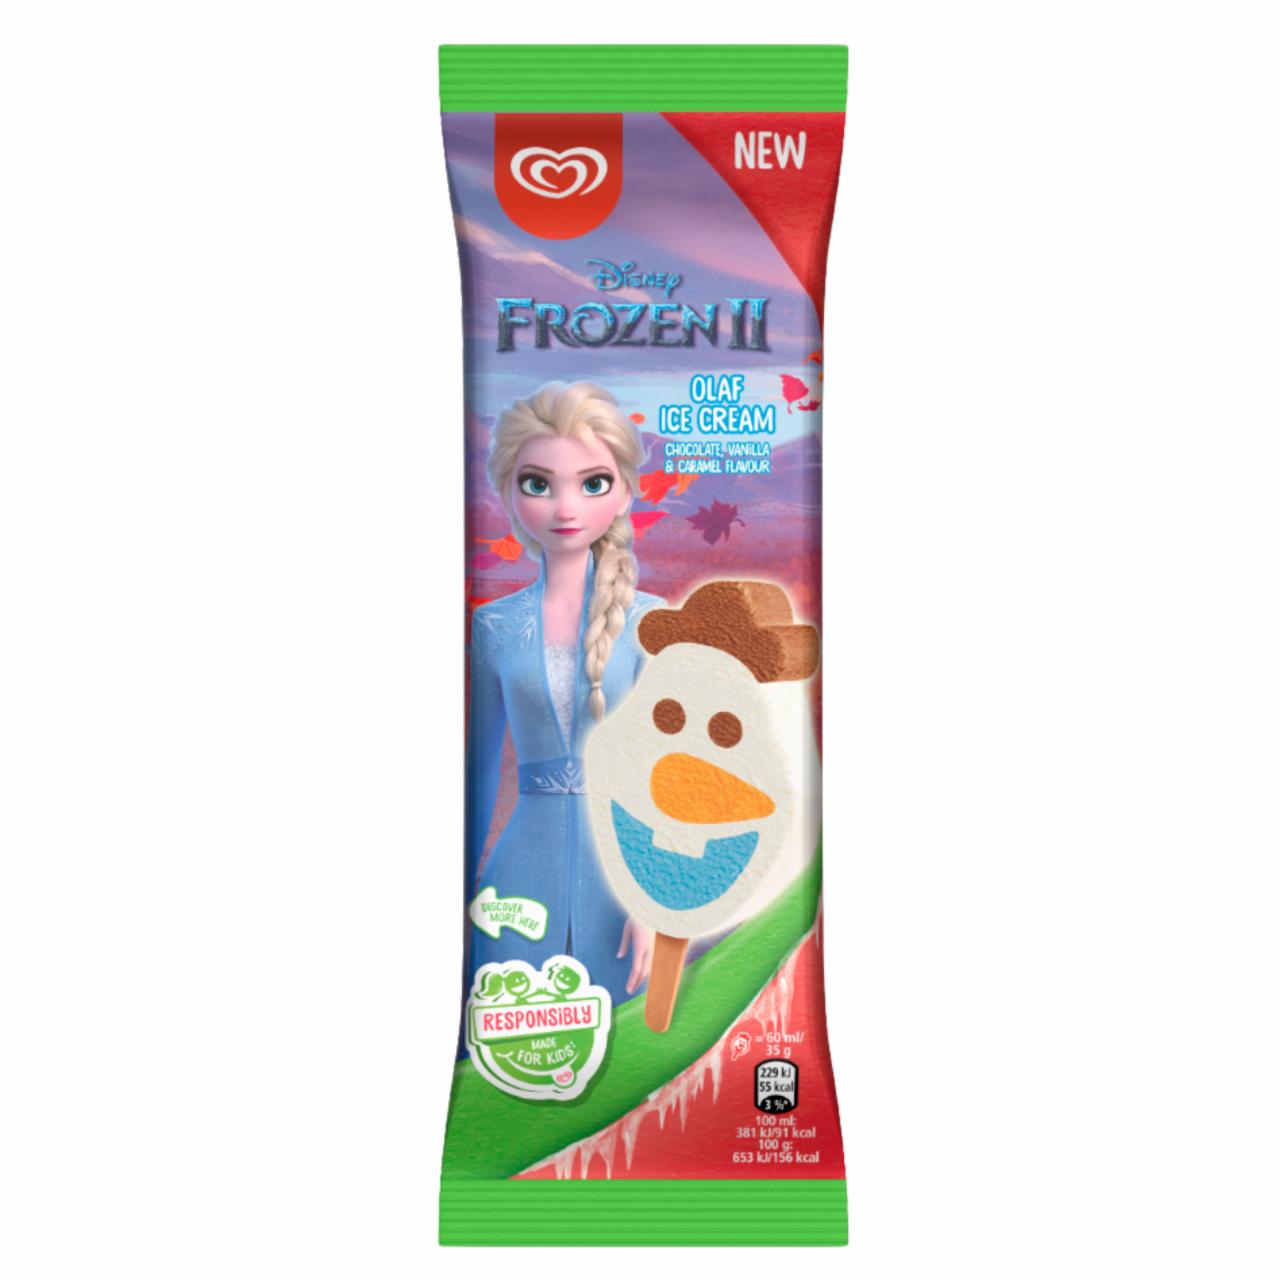 Fotografie - Frozen Olaf Snowman Vanilla-Cocoa-Caramel Flavor Algida